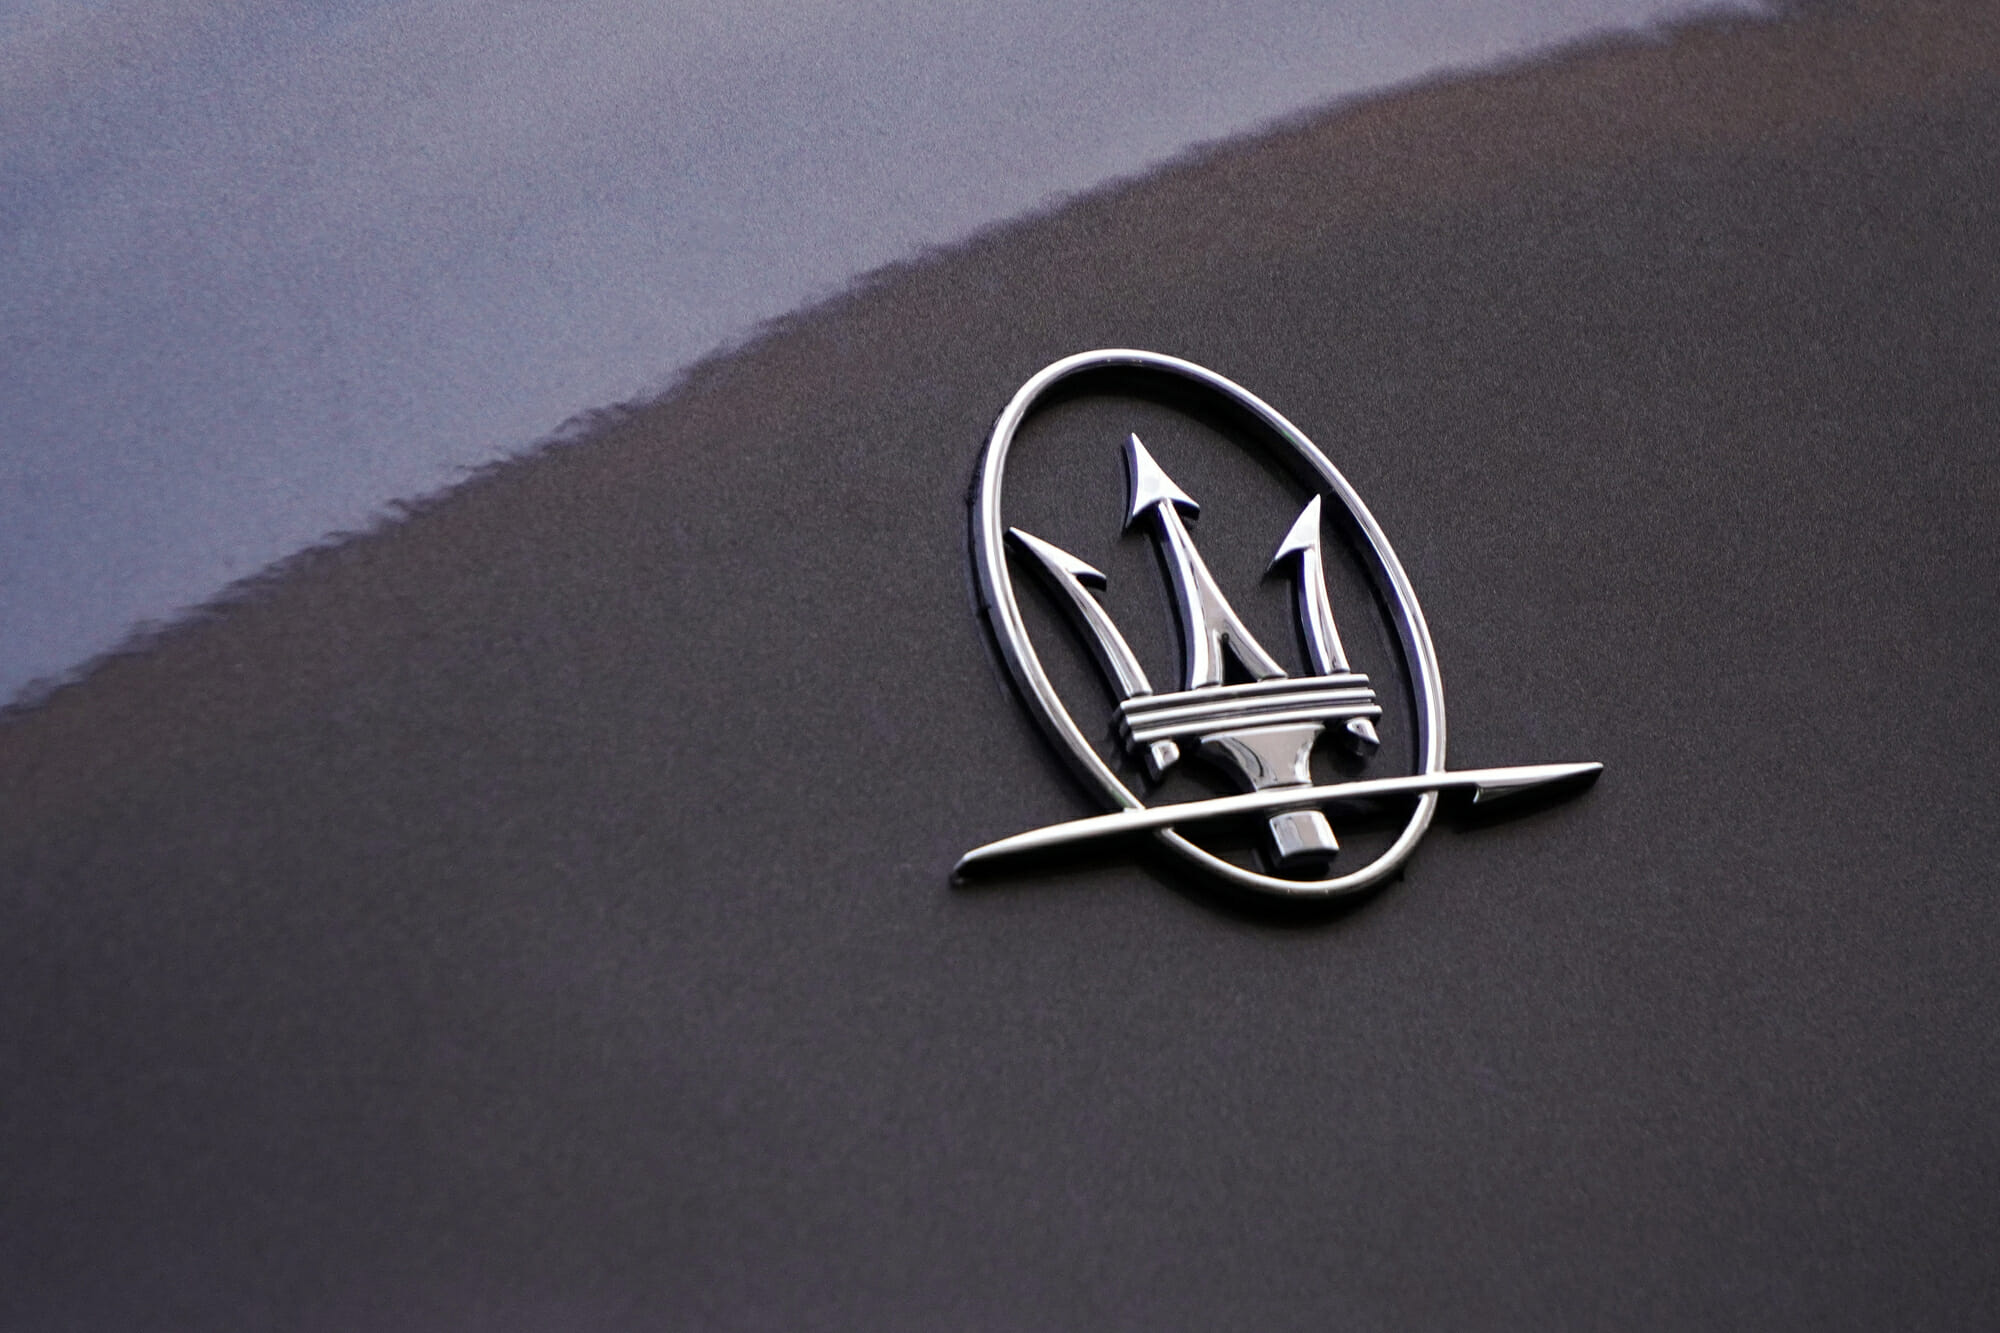 Maserati SUV Price, Depreciation, and Value